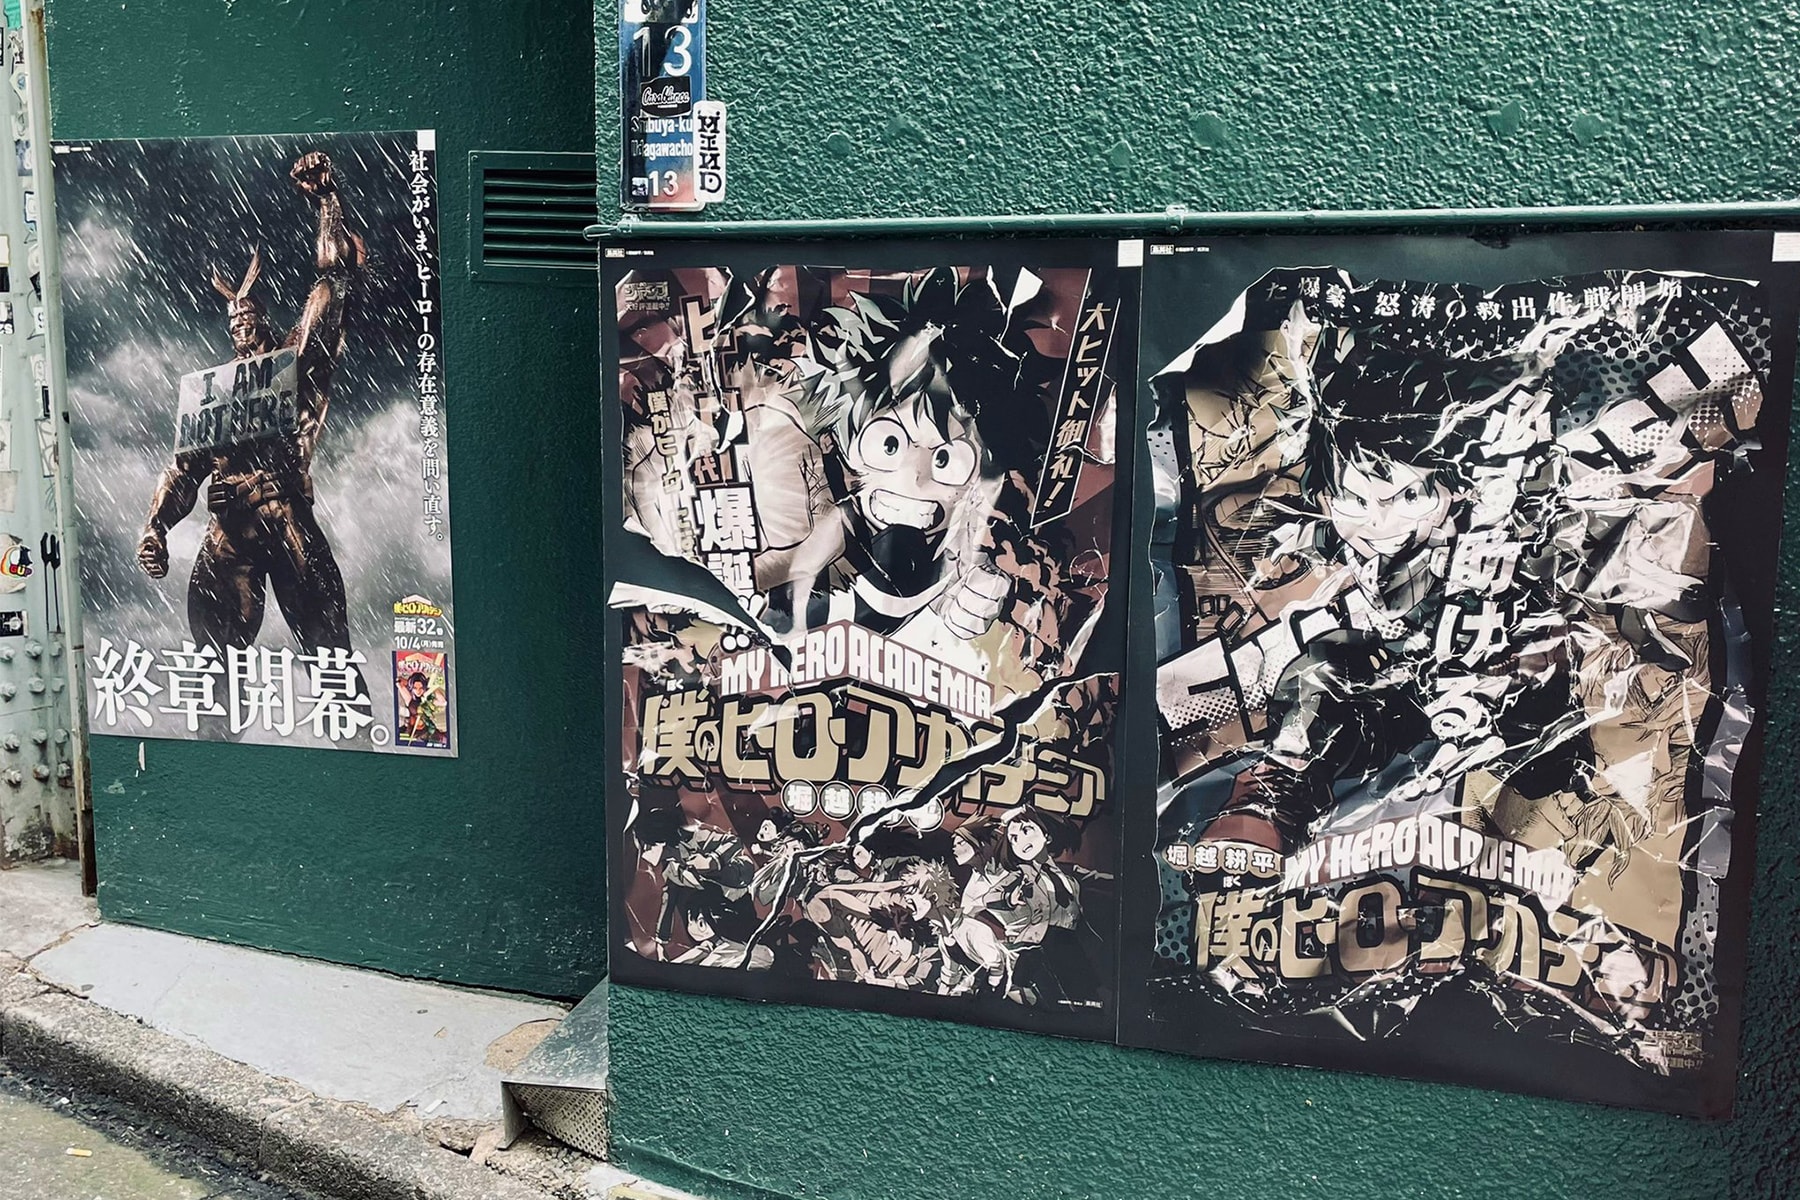 《我的英雄學院》連載最終章宣傳海報現身日本澀谷街頭